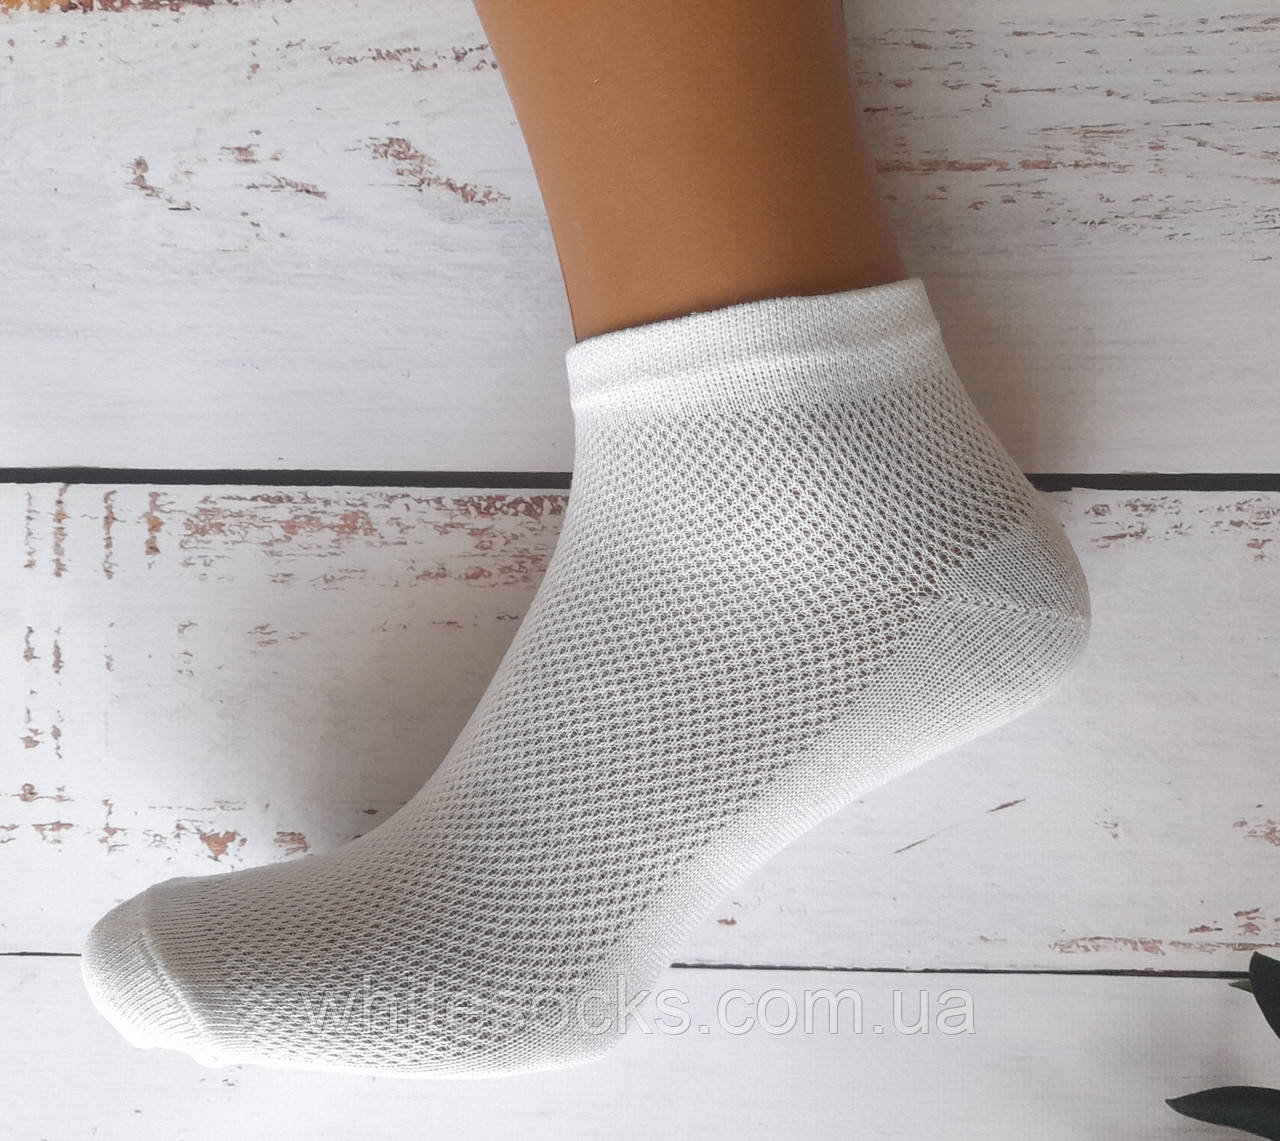 Шкарпетки жіночі Житомир бавовна спорт білі сітка 37-39 | 12 пар